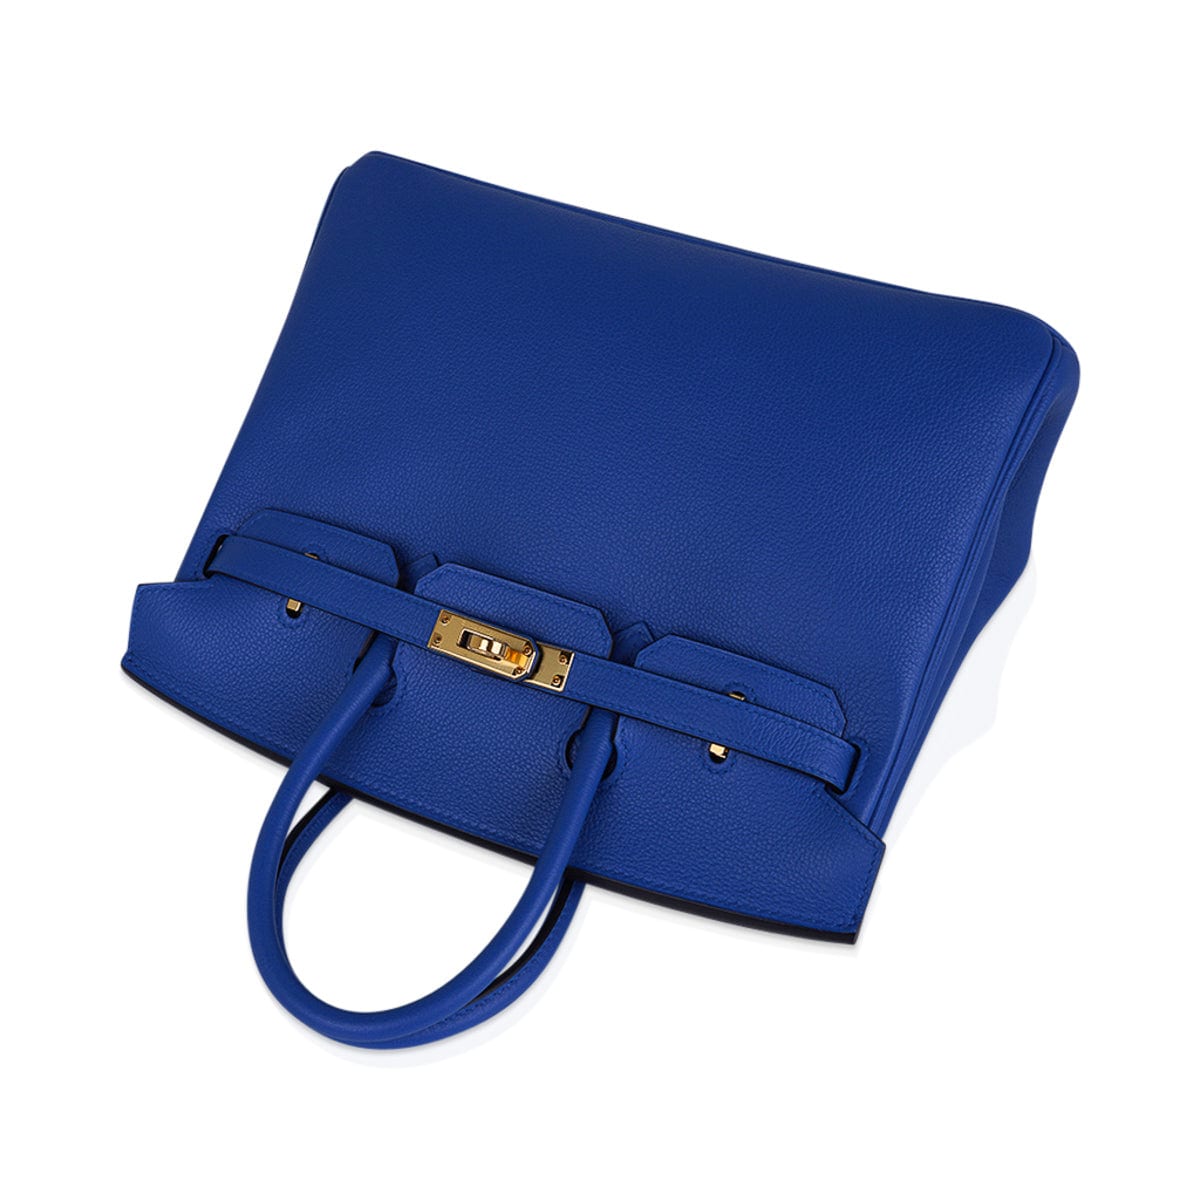 Hermes Birkin 25 Bag Blue Zellige Gold Hardware Novillo Leather